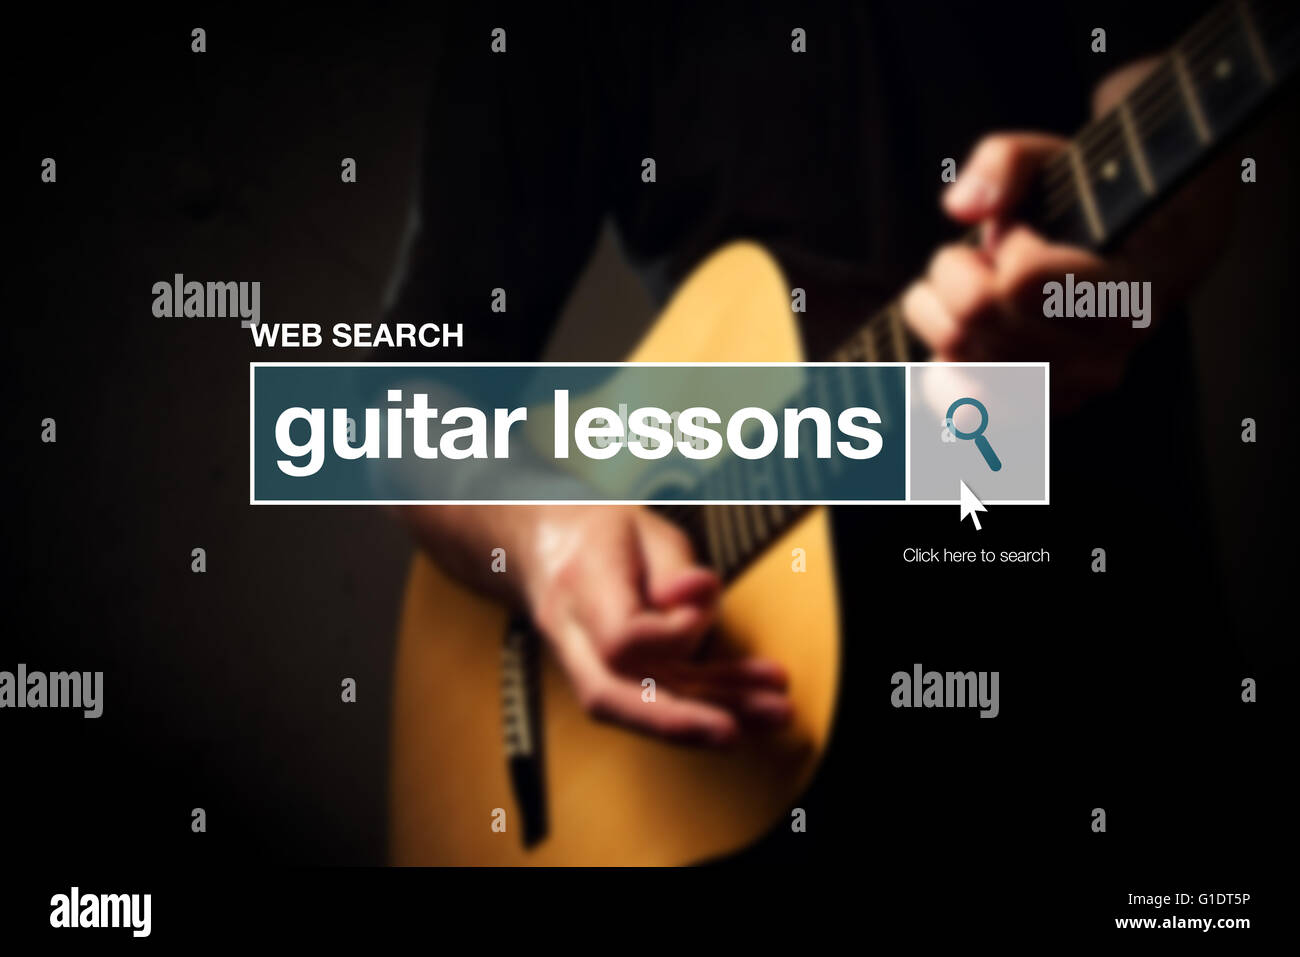 Le lezioni di chitarra web casella di ricerca Termine del glossario su internet Foto Stock